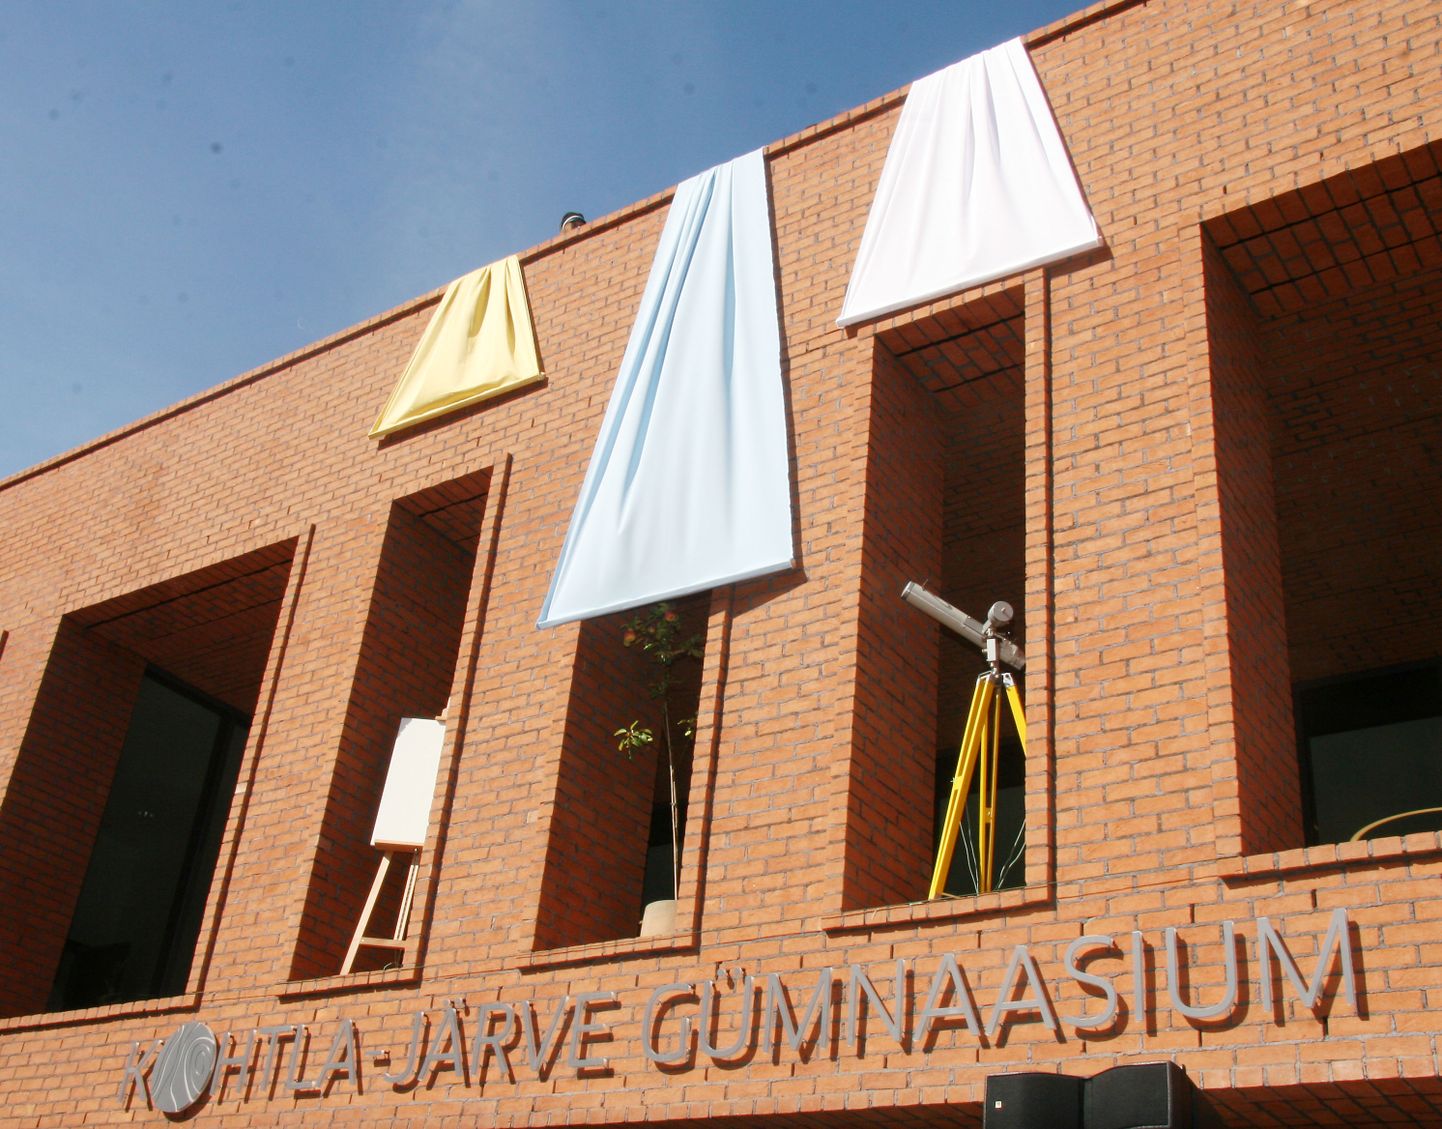 Kohtla-Järve gümnaasium alustas tegevust 2019. aasta septembris.